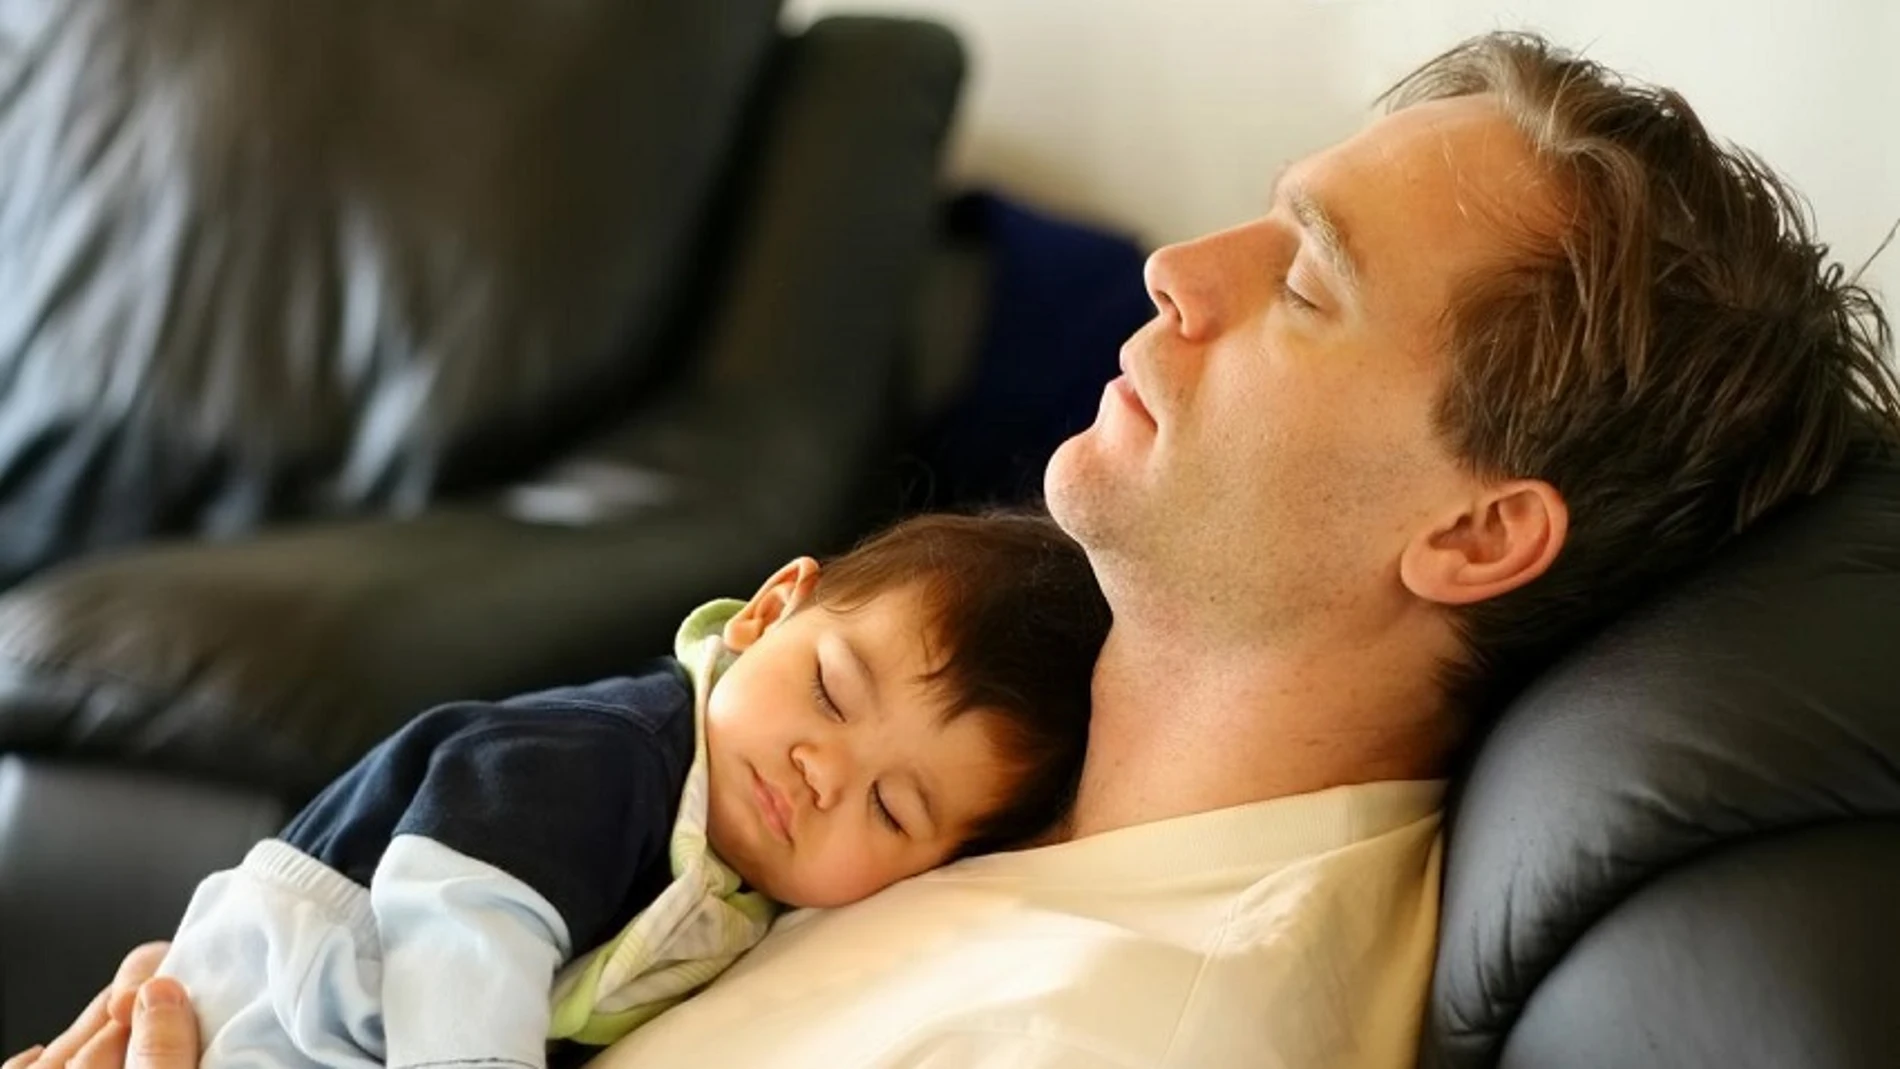 Advierten que dormir con un bebé en el sofá aumenta su riesgo de muerte súbita